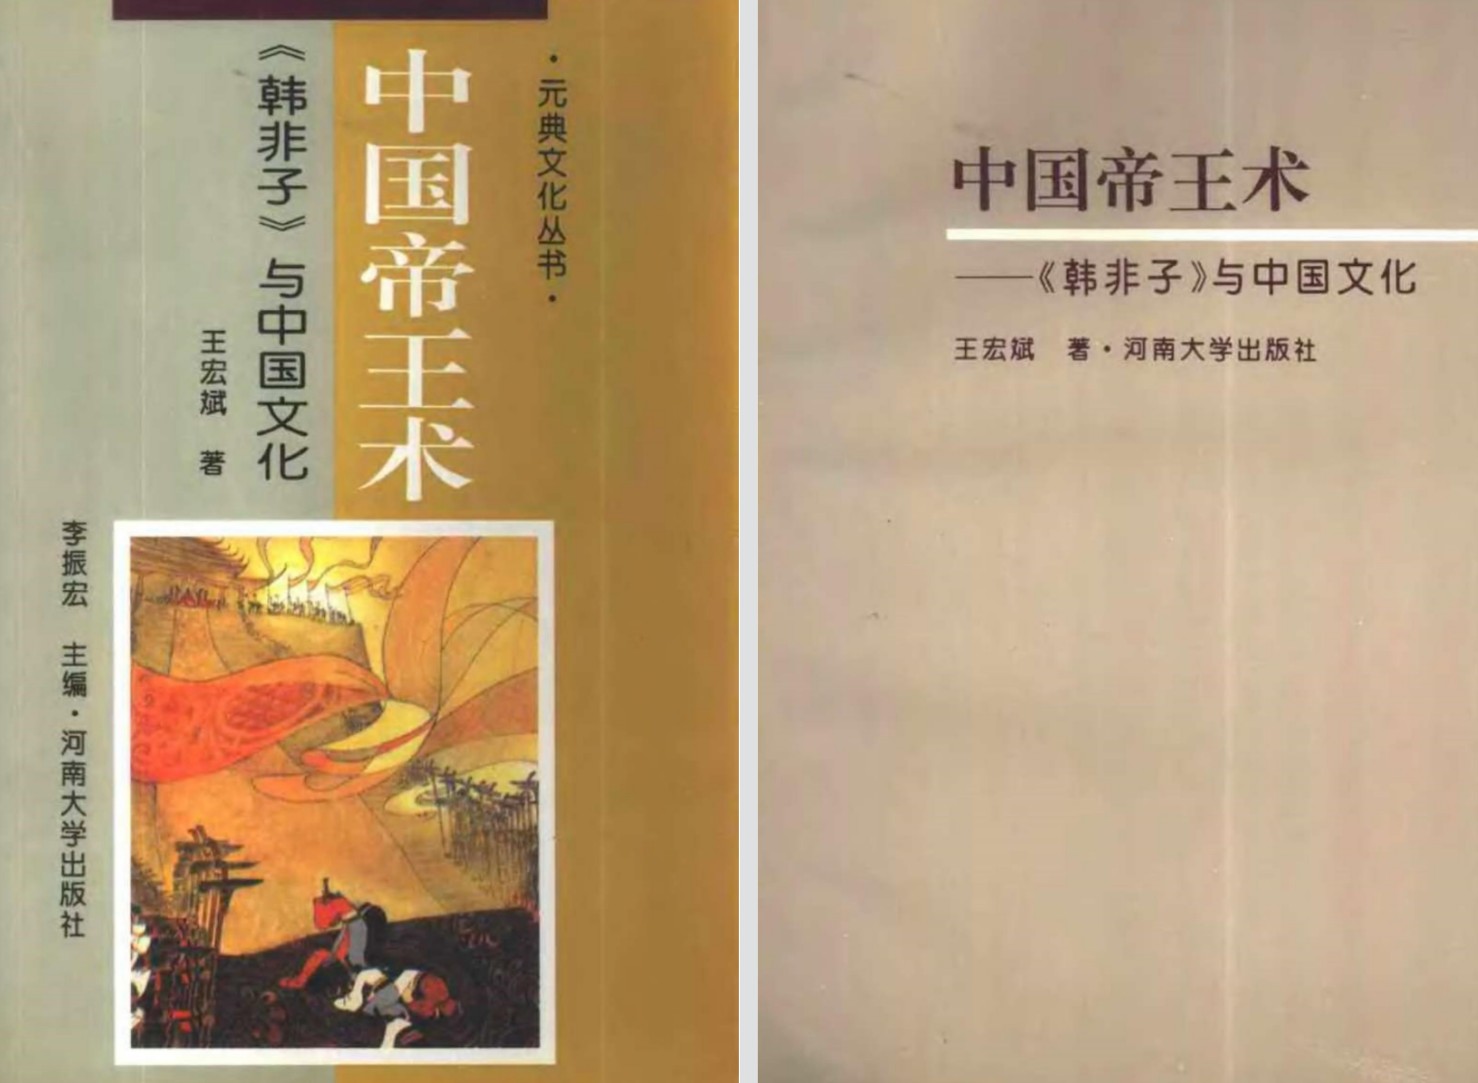 《中国帝王术》[独家无印]「百度网盘下载」PDF 电子书插图